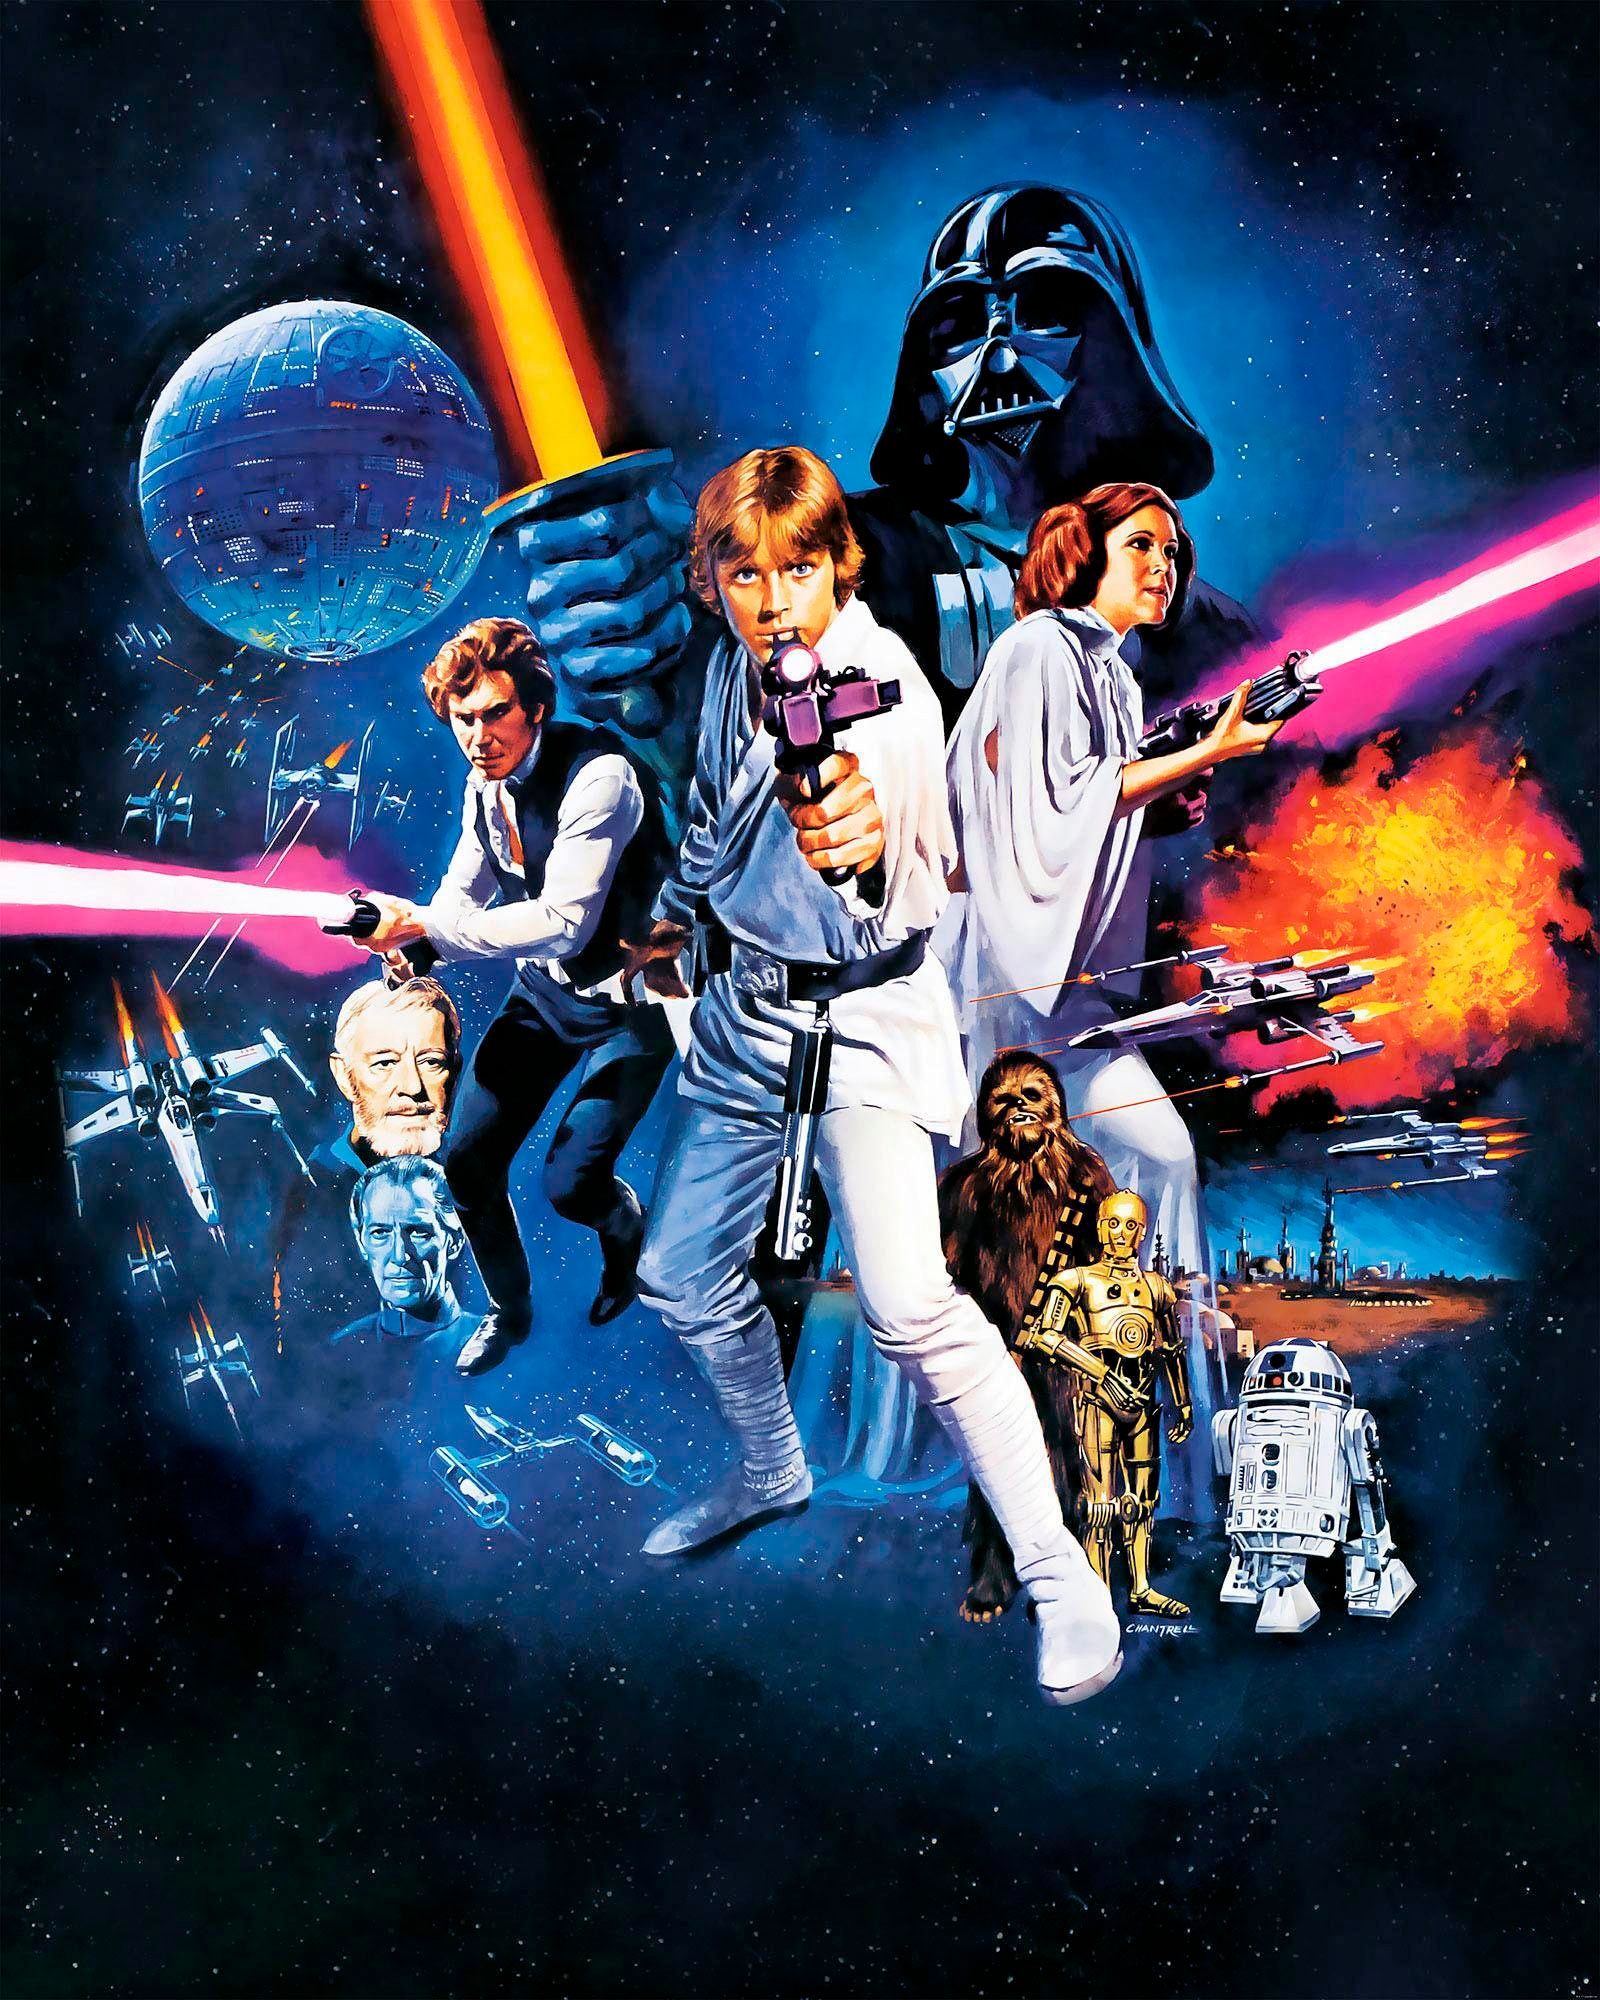 Komar Vliestapete "Star Wars Poster Classic 1", 200x250 cm (Breite x Höhe), Vliestapete, 100 cm Bahnbreite